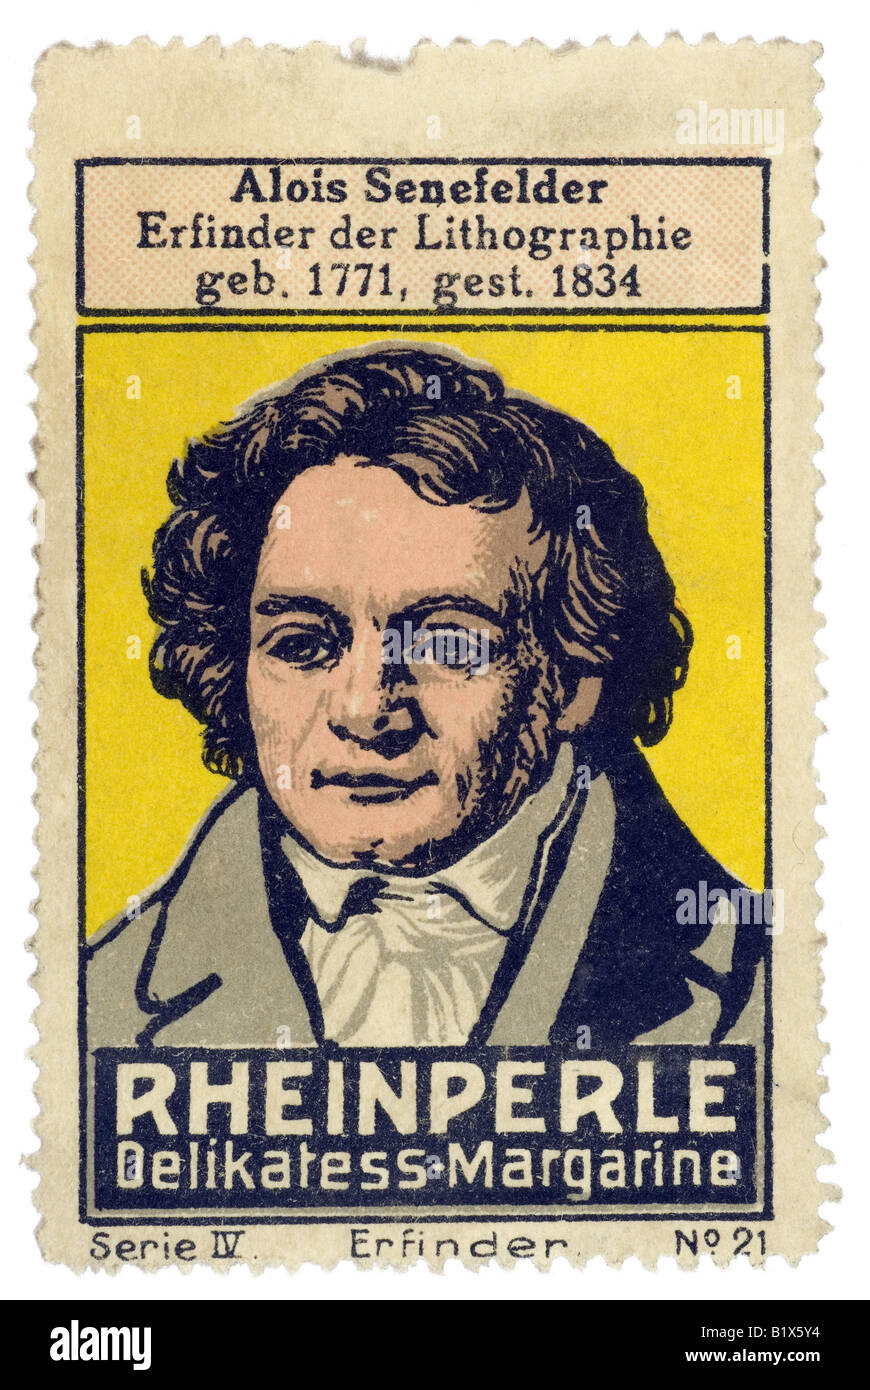 Trading-Stempel Margarine Alois Senefelder Inventor der Lithographie Geb 1771 in Hagerston gest. 1834 Reinperle Delikatess Margarin Stockfoto